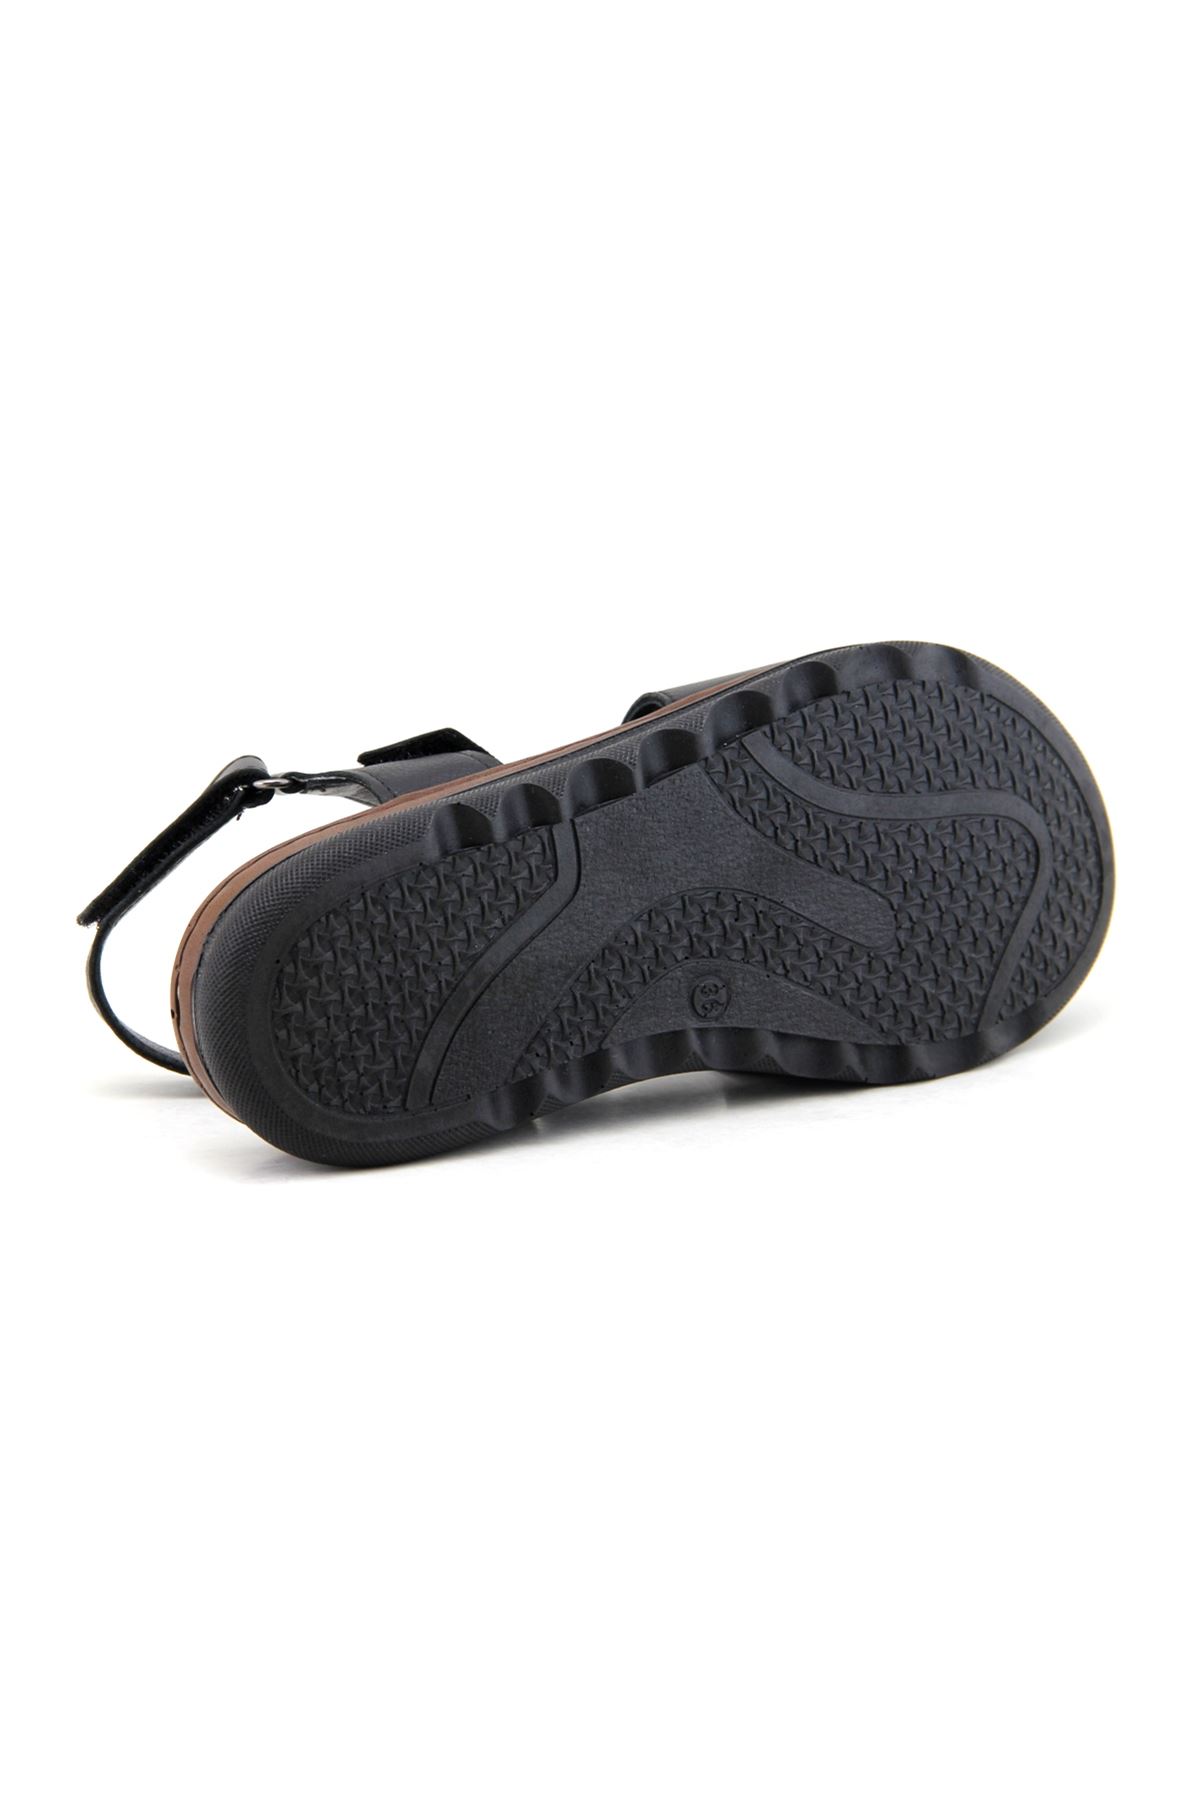 Venüs 23021716 Hakiki Deri Comfort Kadın Sandalet  - Siyah